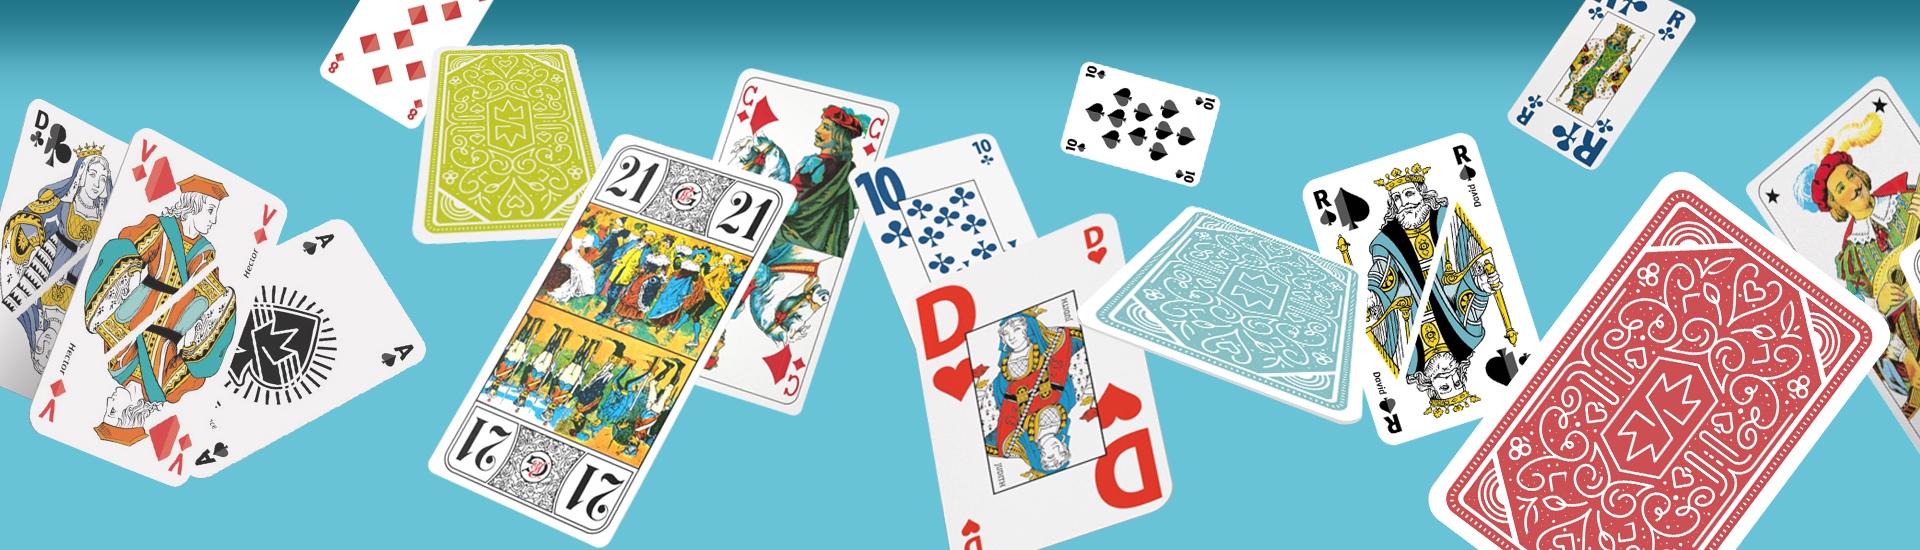 LotFancy Jeu de cartes, 2 jeux de cartes (bleu et rouge), taille